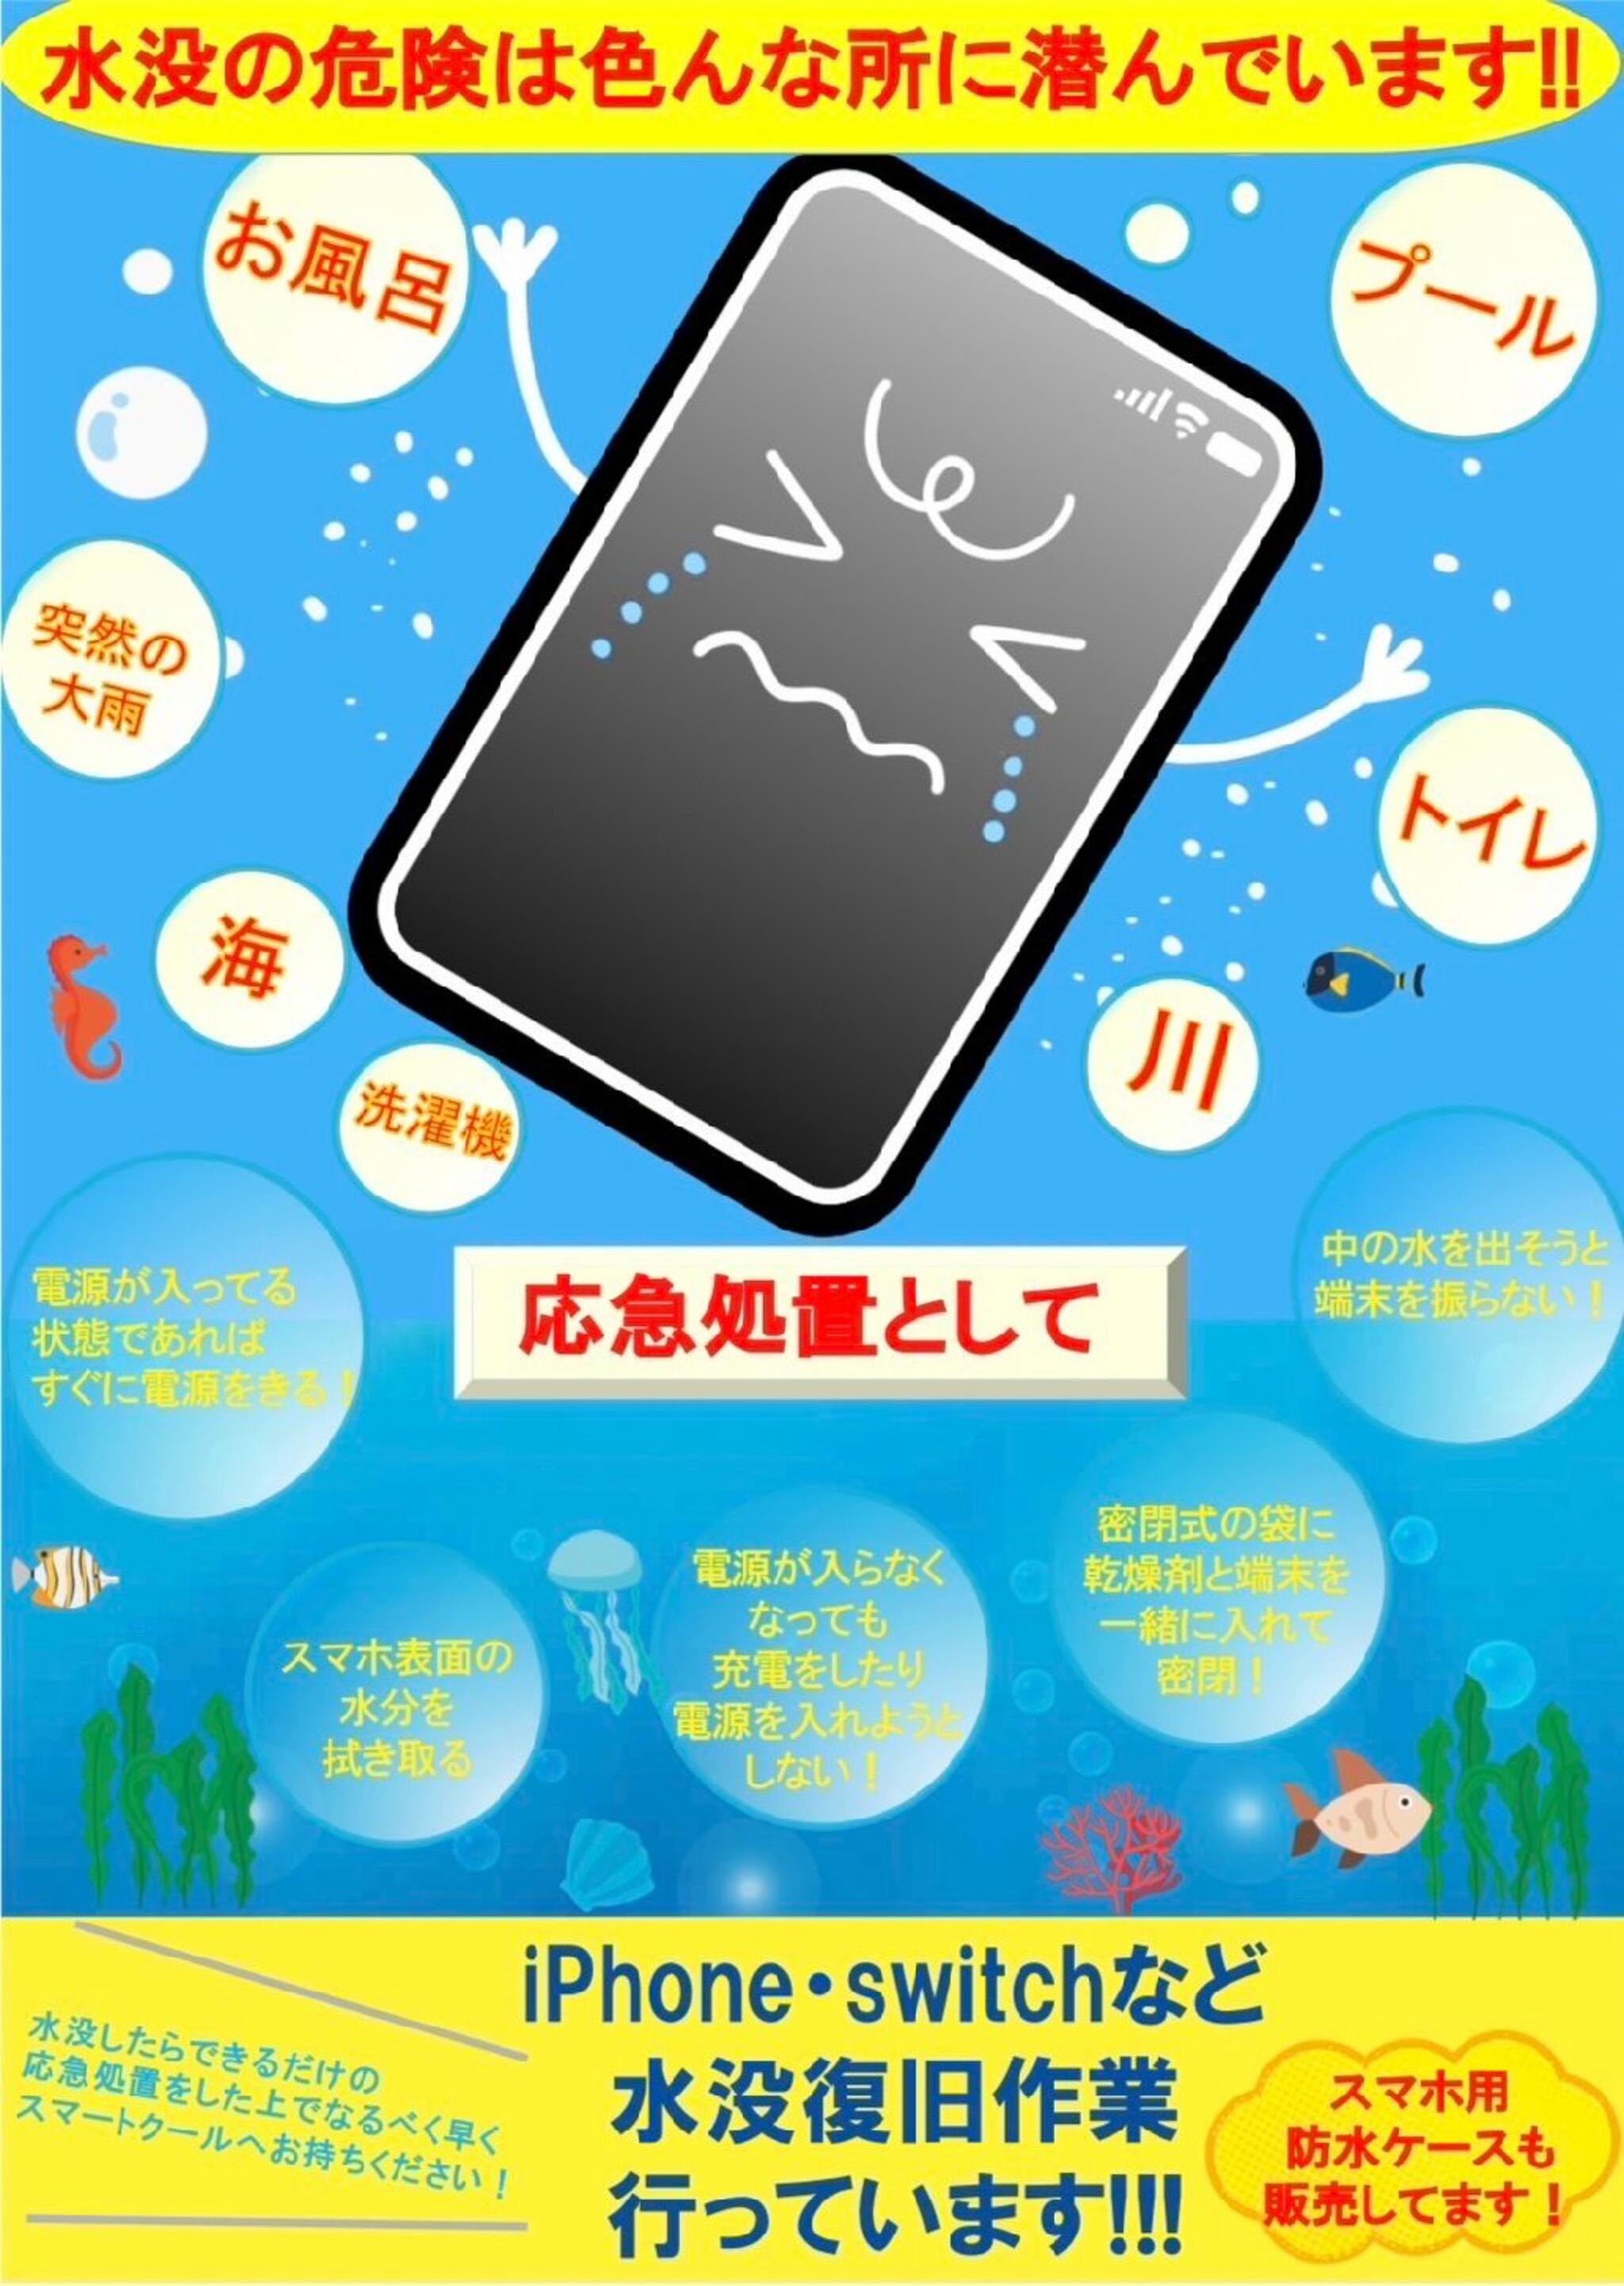 iPhone・iPad・Switch修理店 スマートクール イオンモール広島祇園店からのお知らせ(良い お天気が続いていますが、雨の日にはご用心！)に関する写真